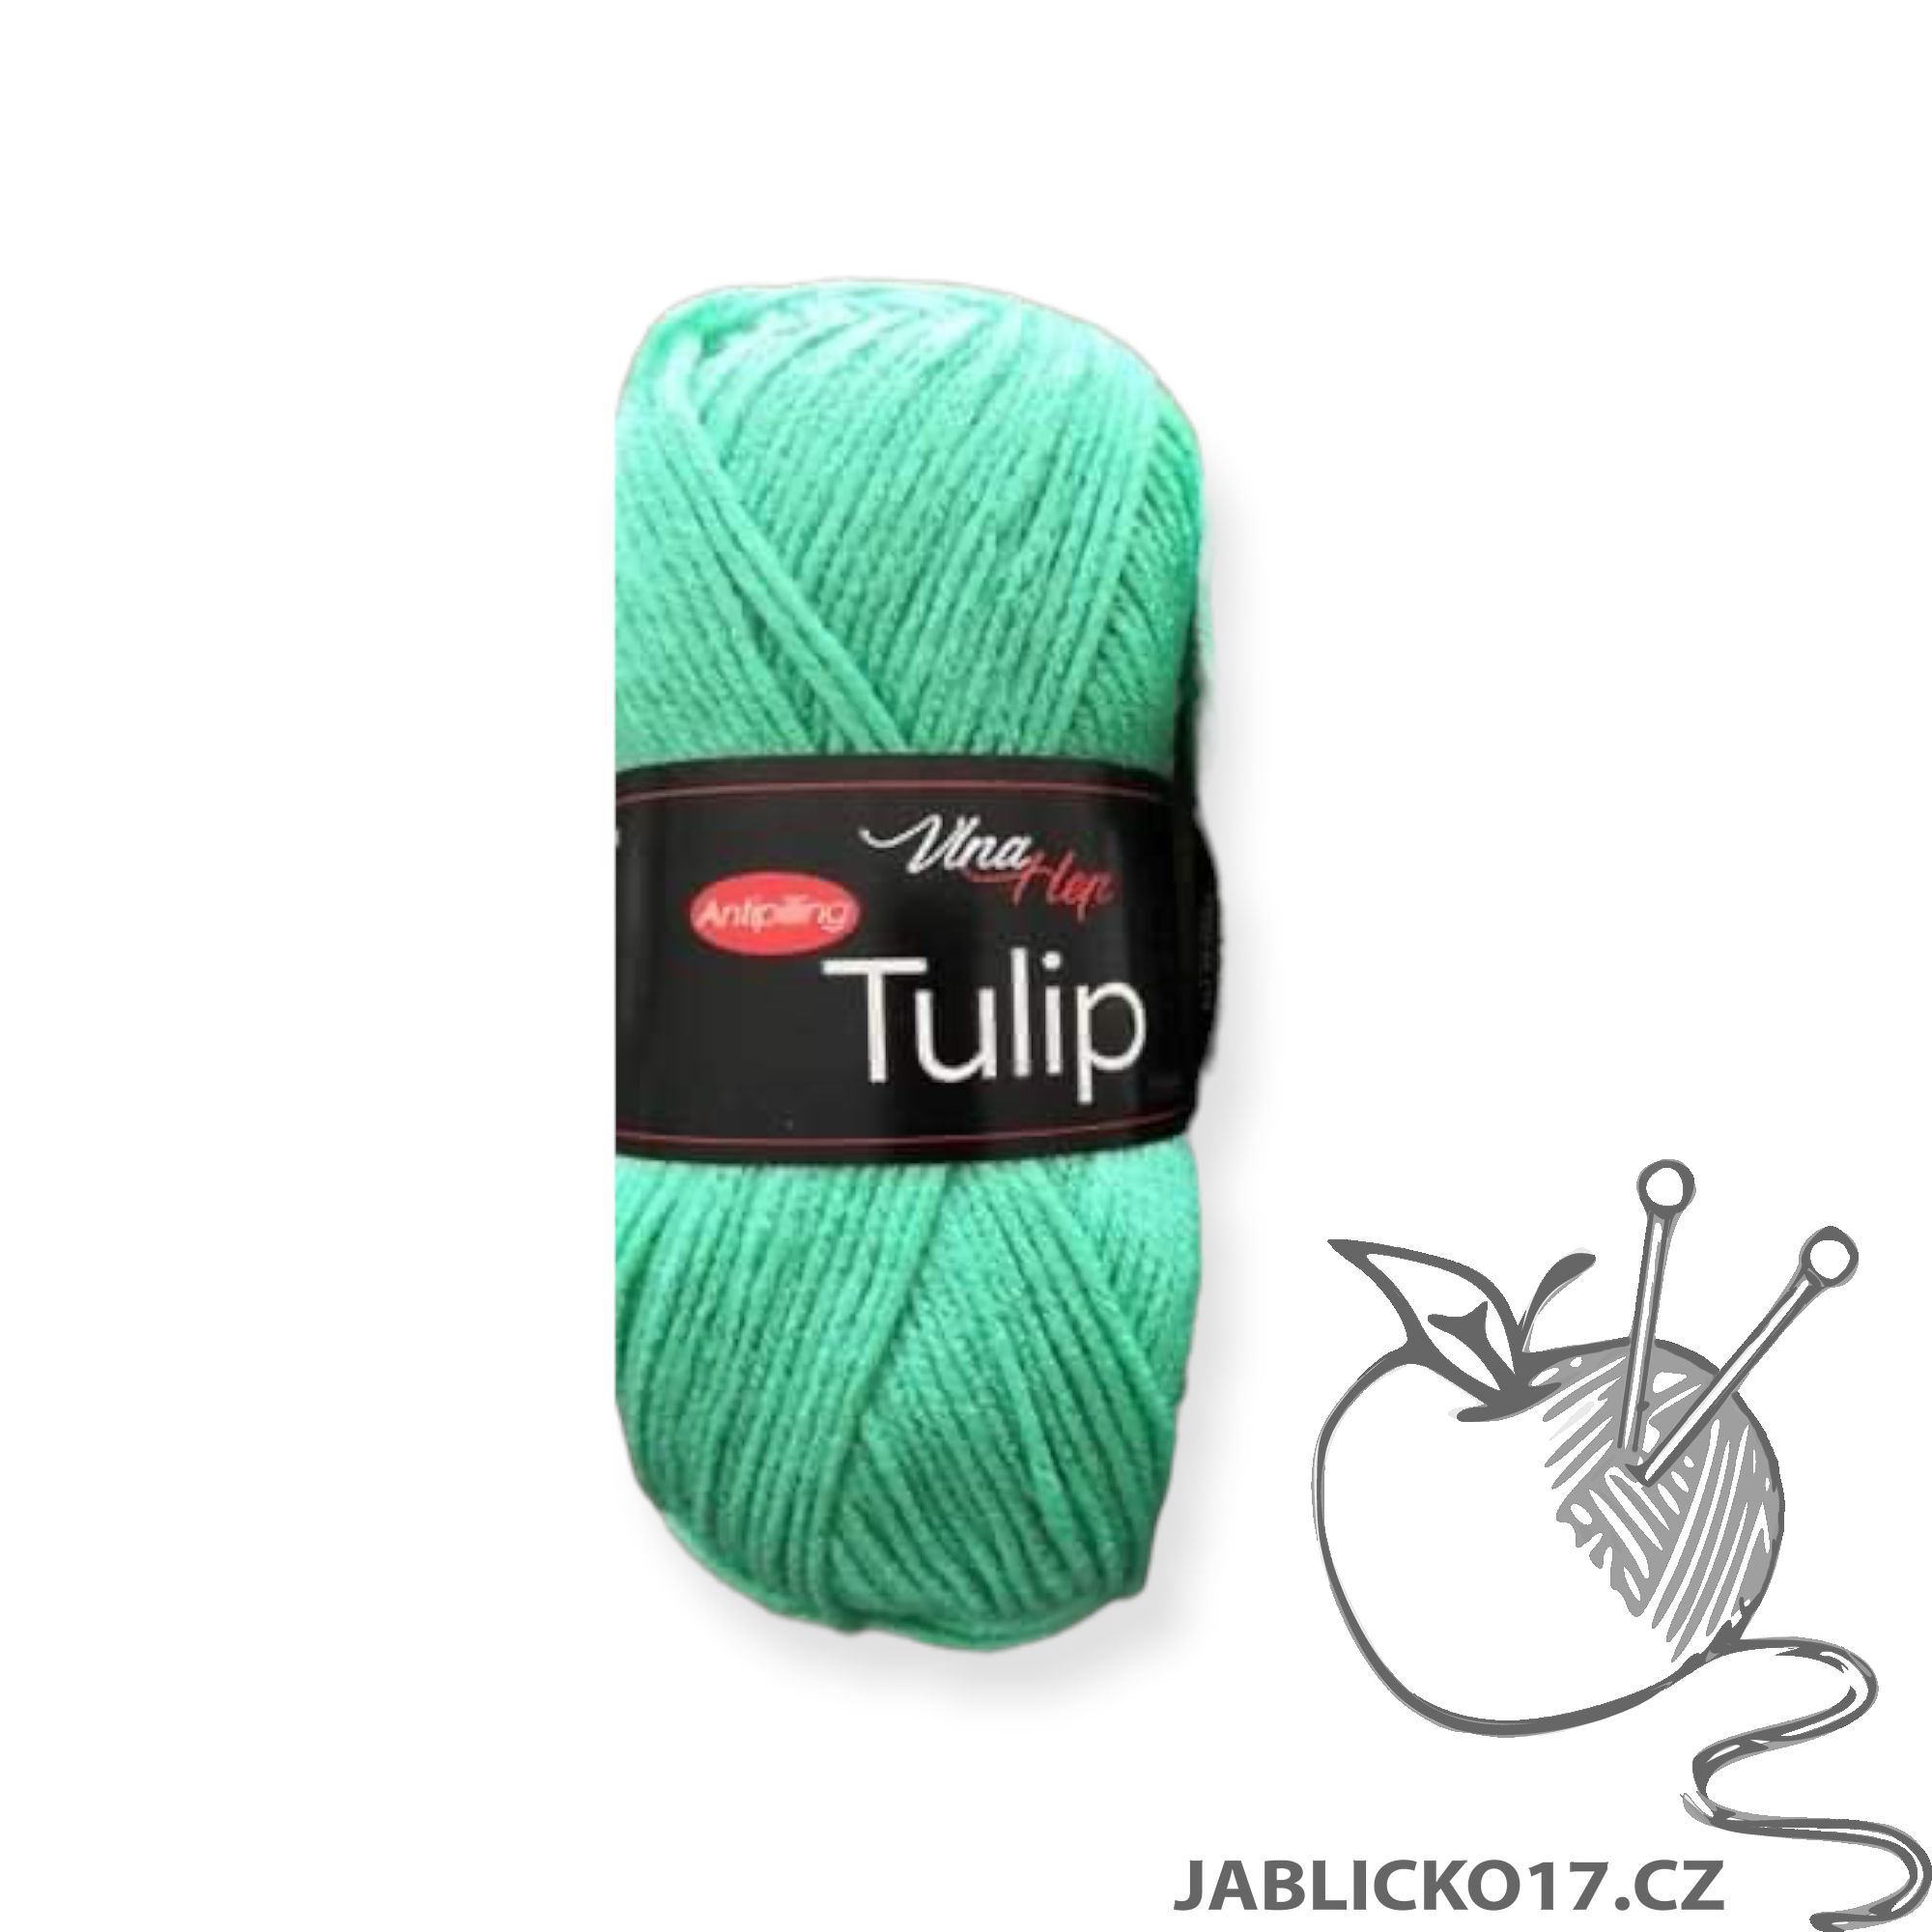 Tulip mint